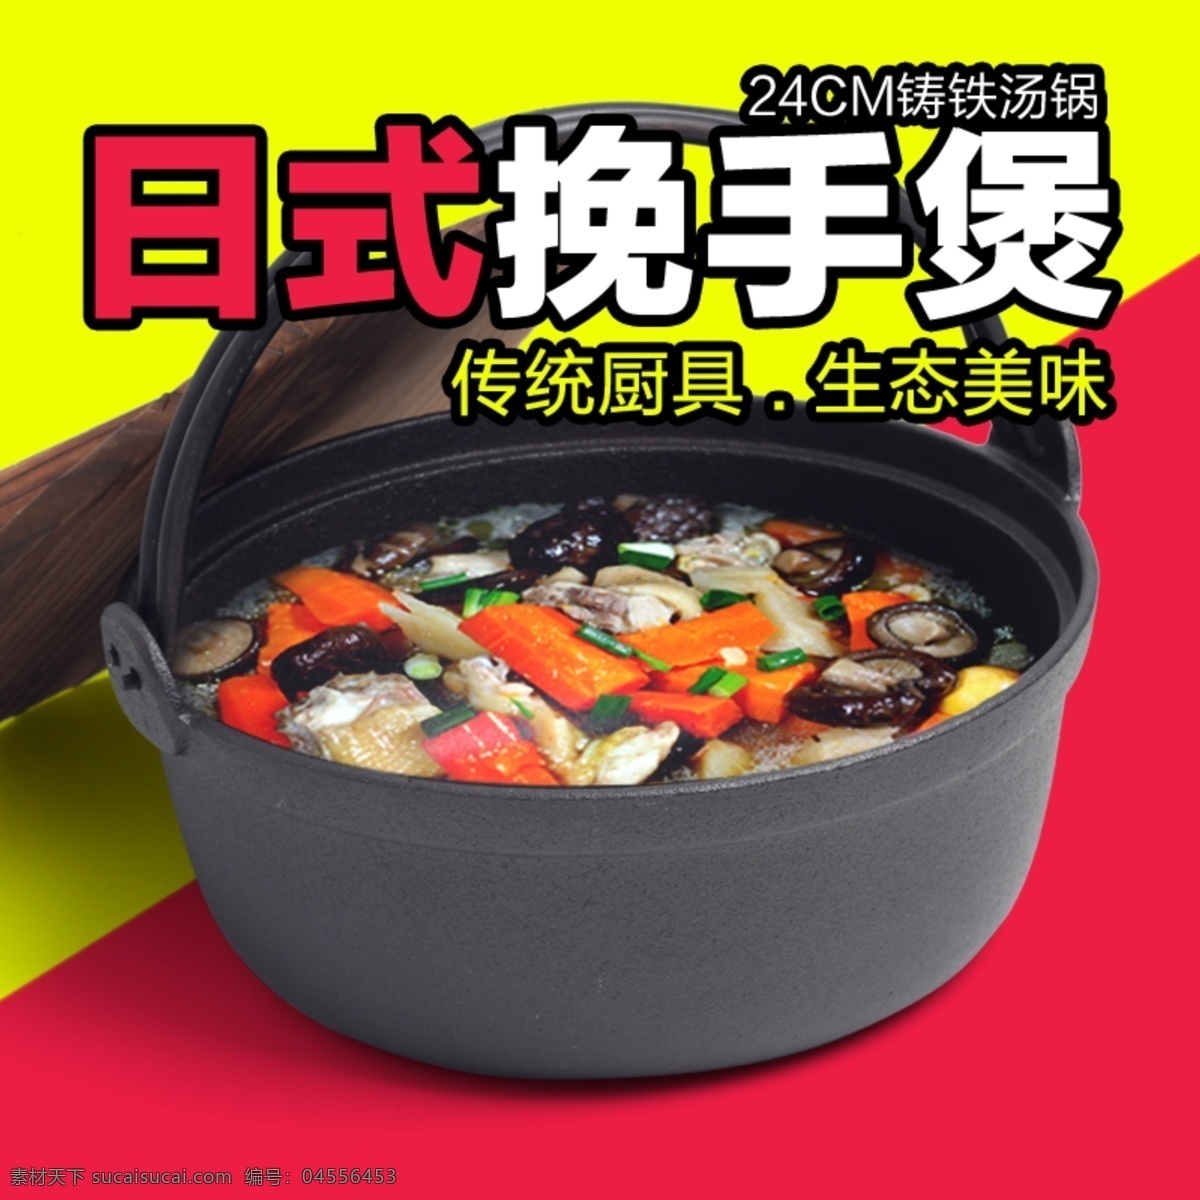 日式 挽 手 煲汤 锅 直通车 推广 汤锅 原创设计 原创淘宝设计